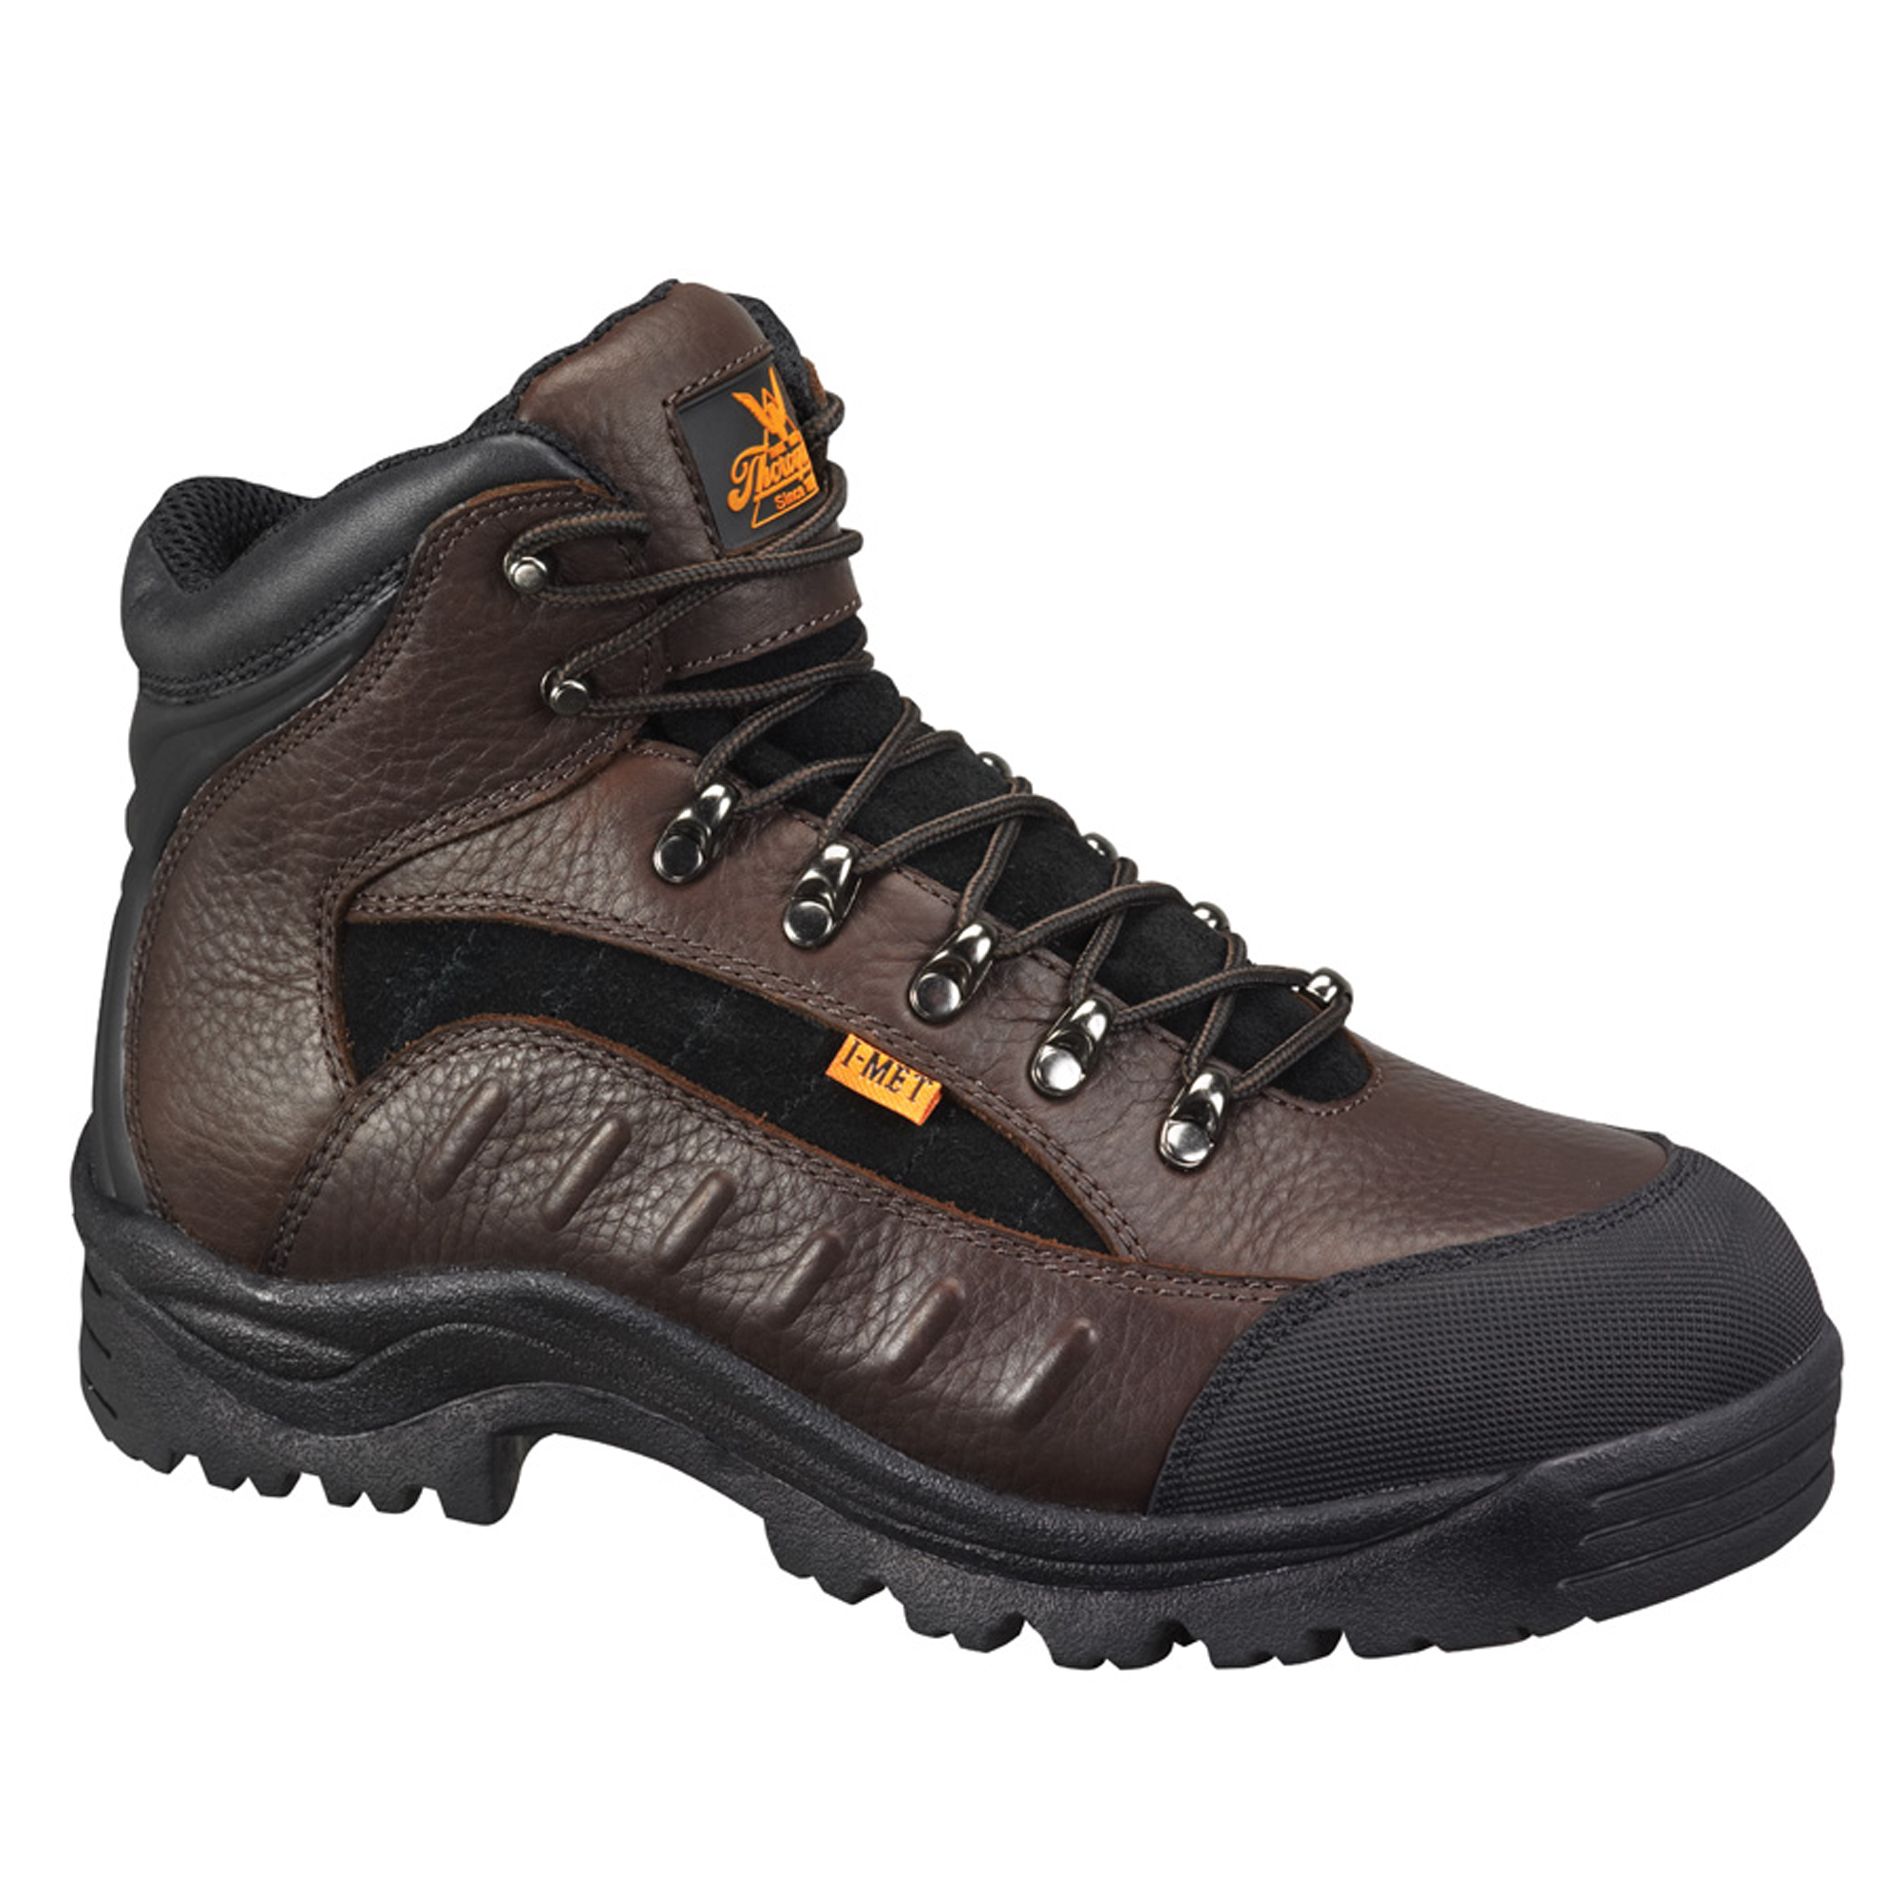 Men's I-Met Guard 804-4312 Dark Brown Steel Toe Work Boots - Wide Width Available